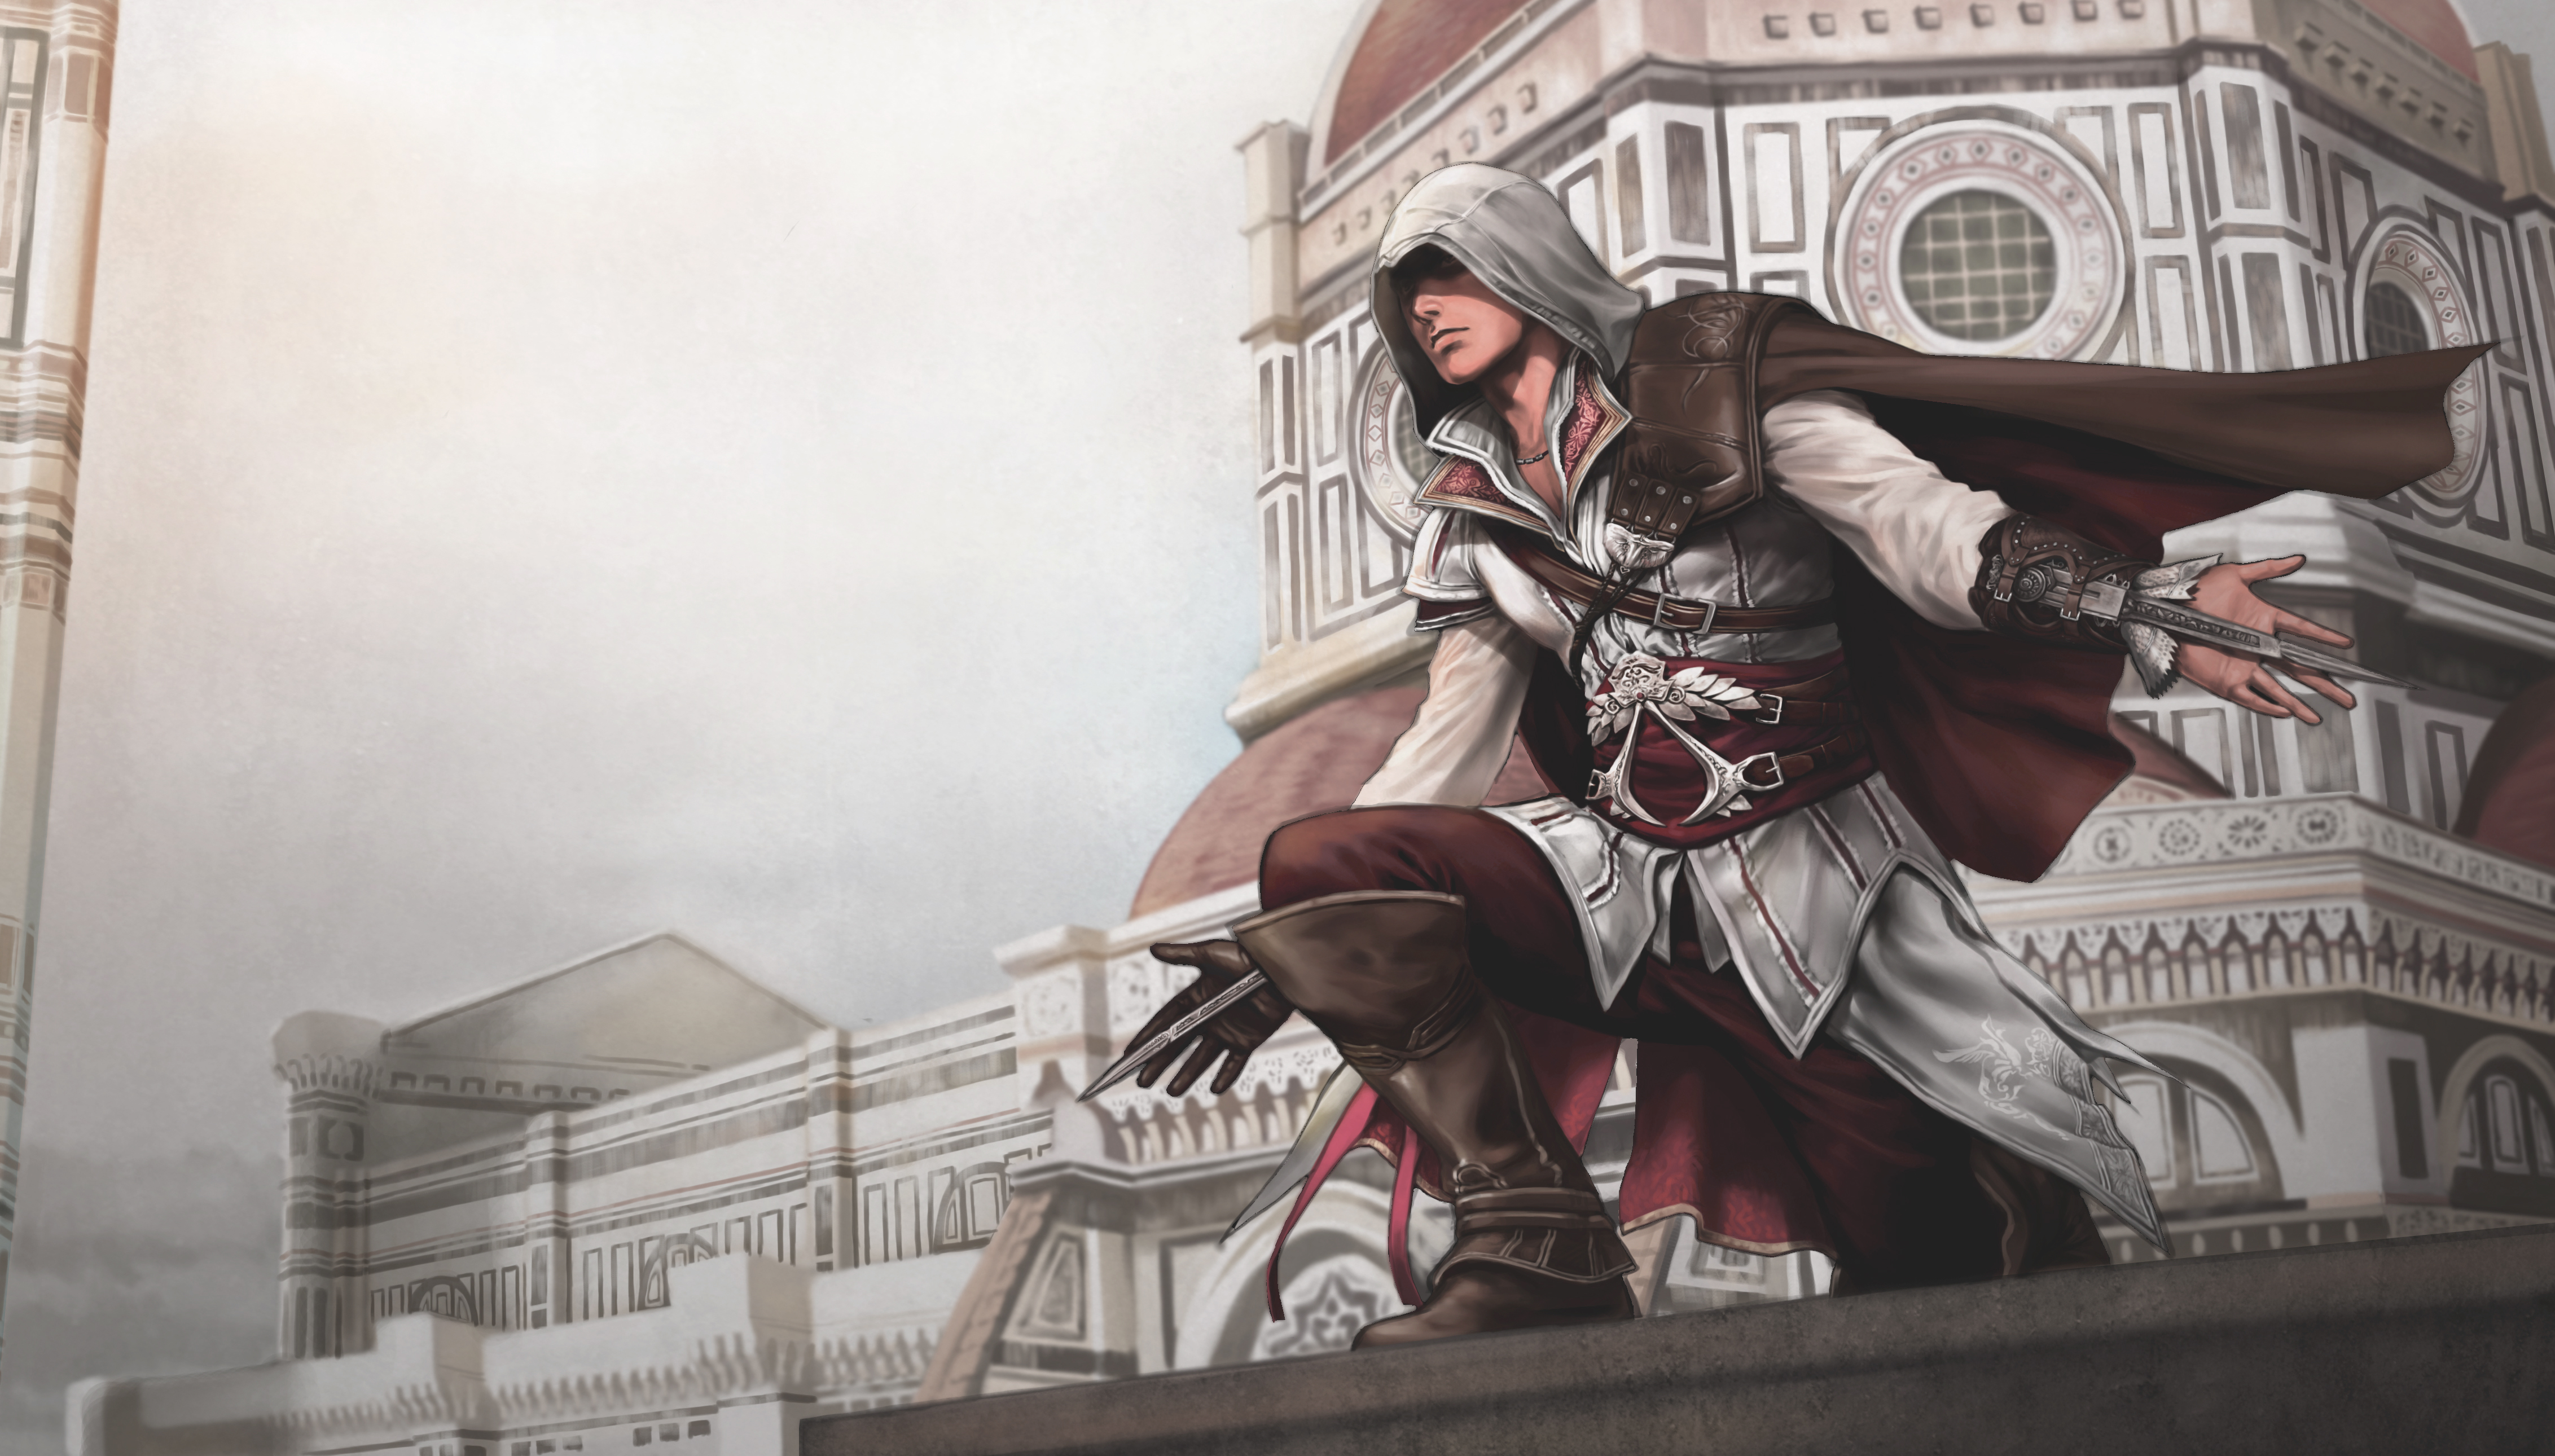 Fondos de Pantalla Assassins Creed 2, Assassins Creed II, Assassins Creed  la Hermandad, Ezio Auditore, Edificio, Imágenes y Fotos Gratis